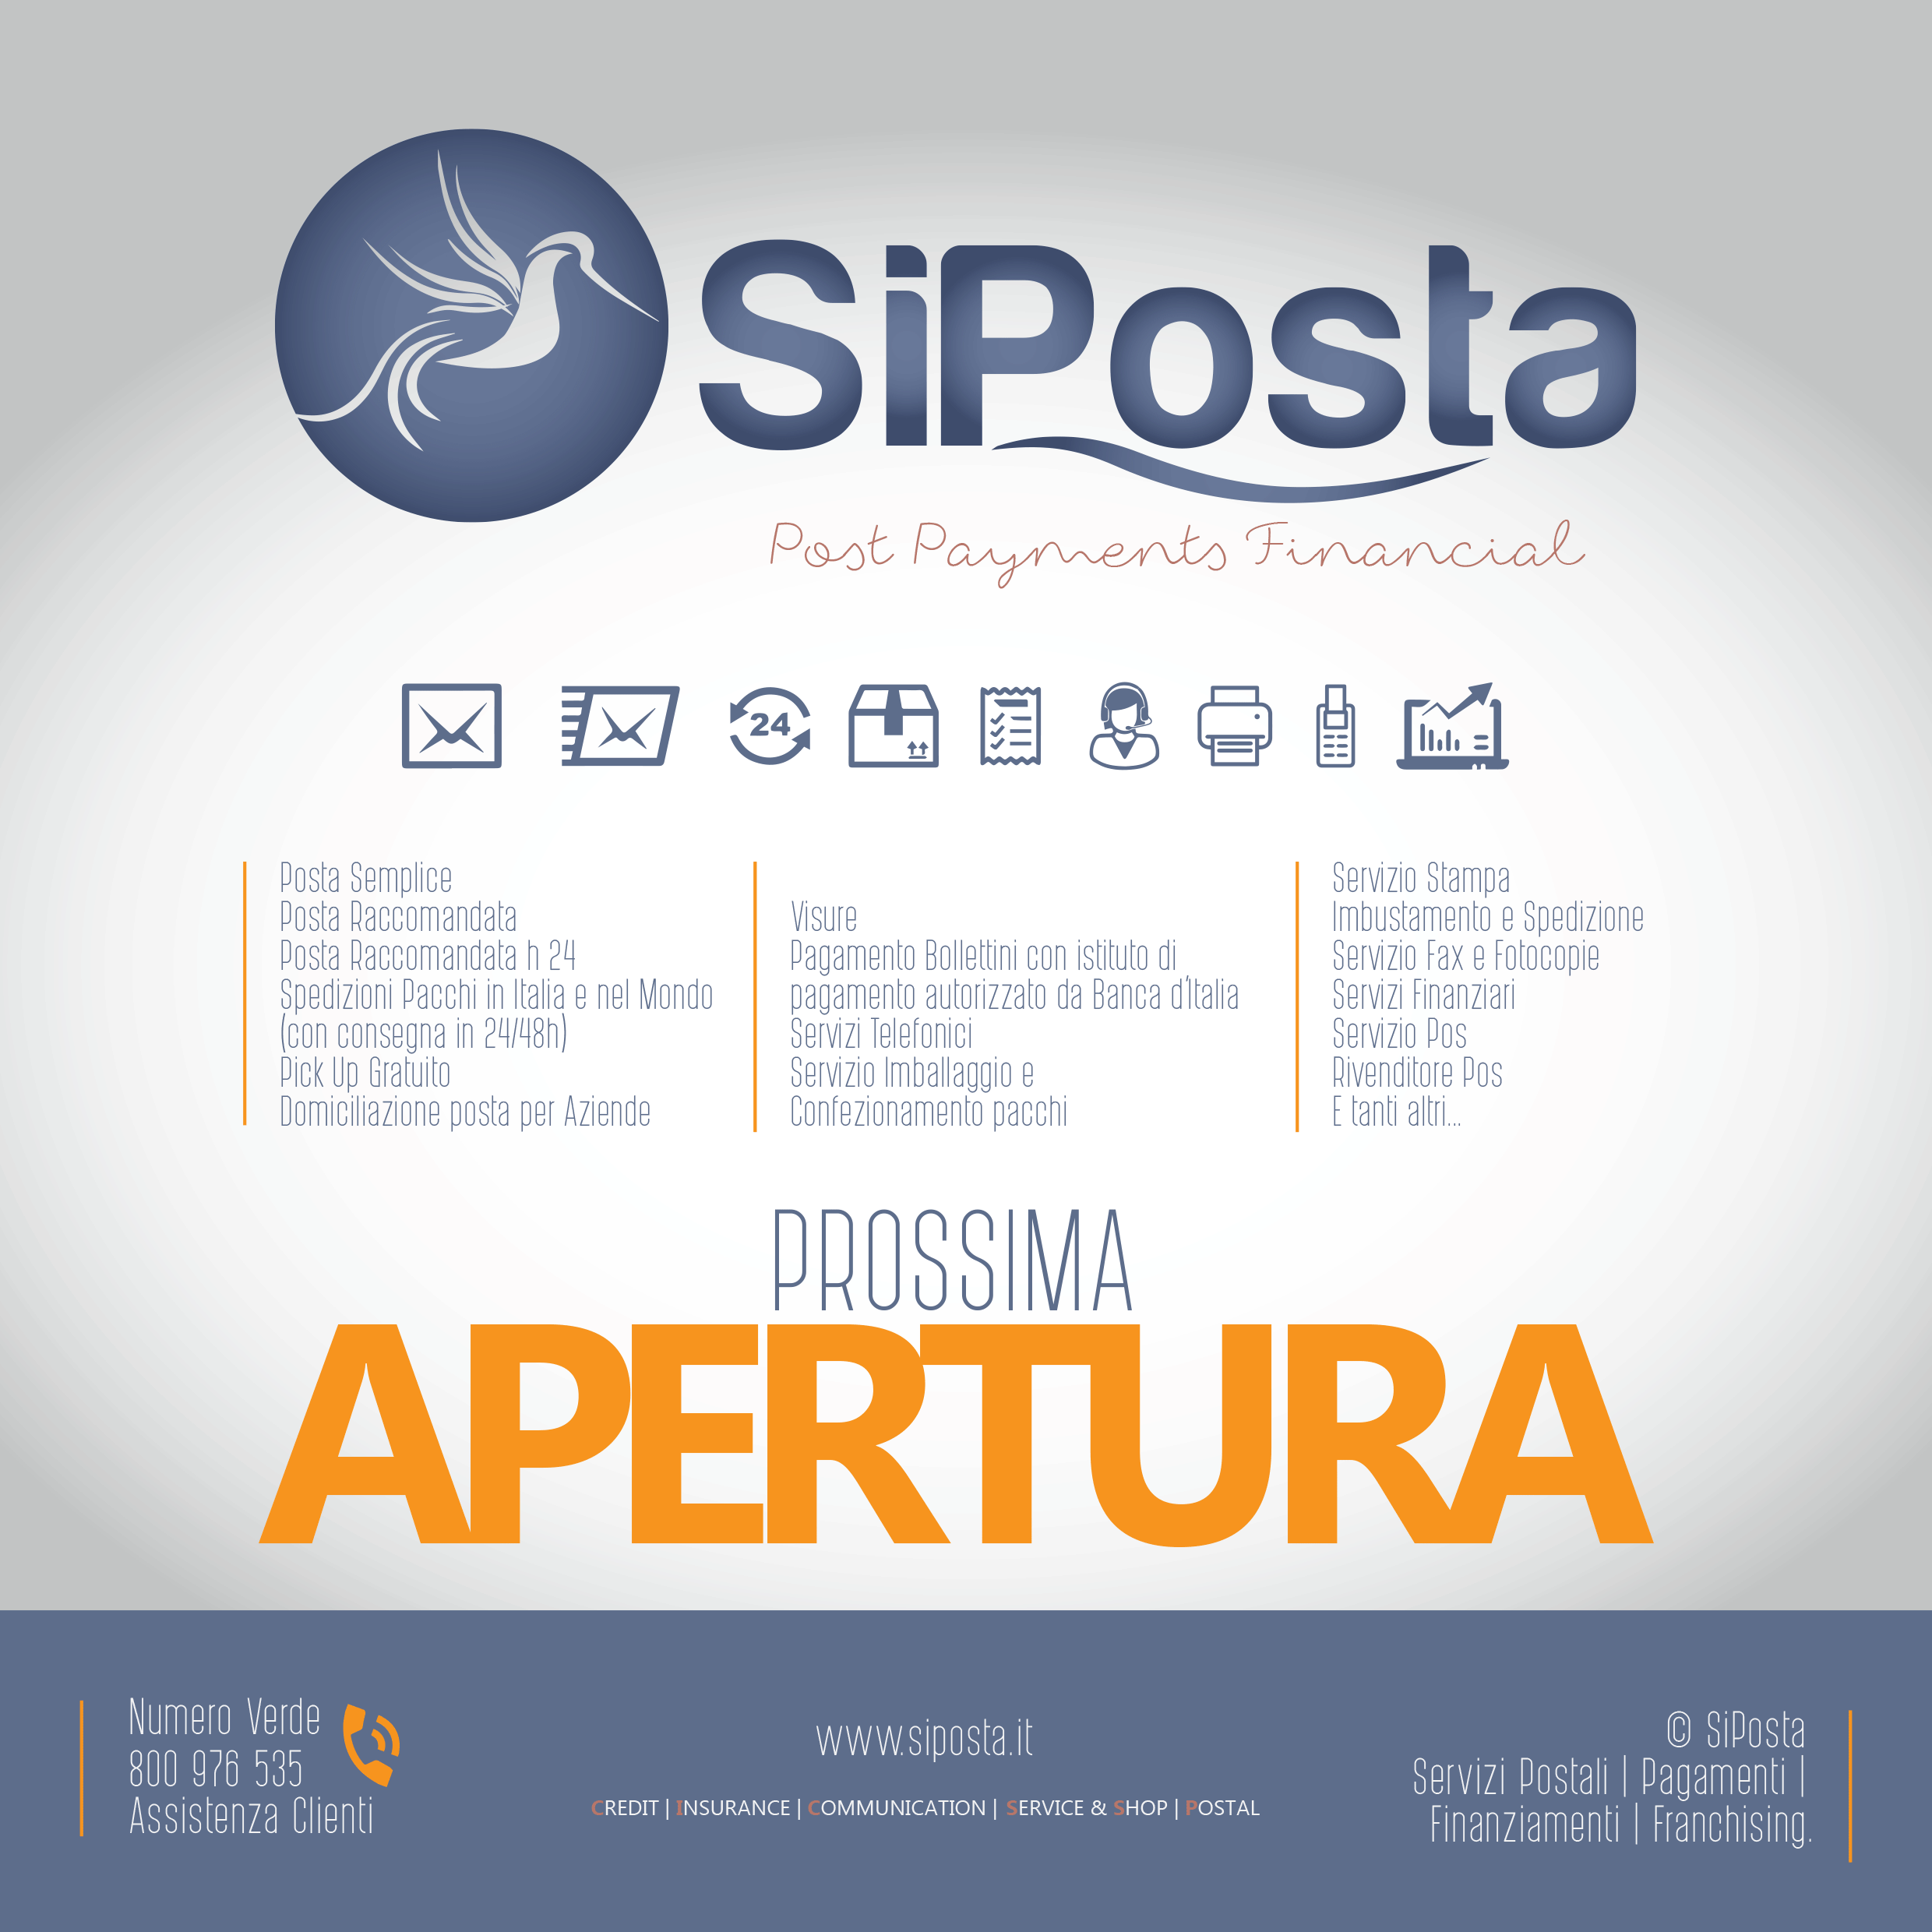 Avviati i lavori che porteranno all'apertura della prossima agenzia SiPosta nel comune di Torino.